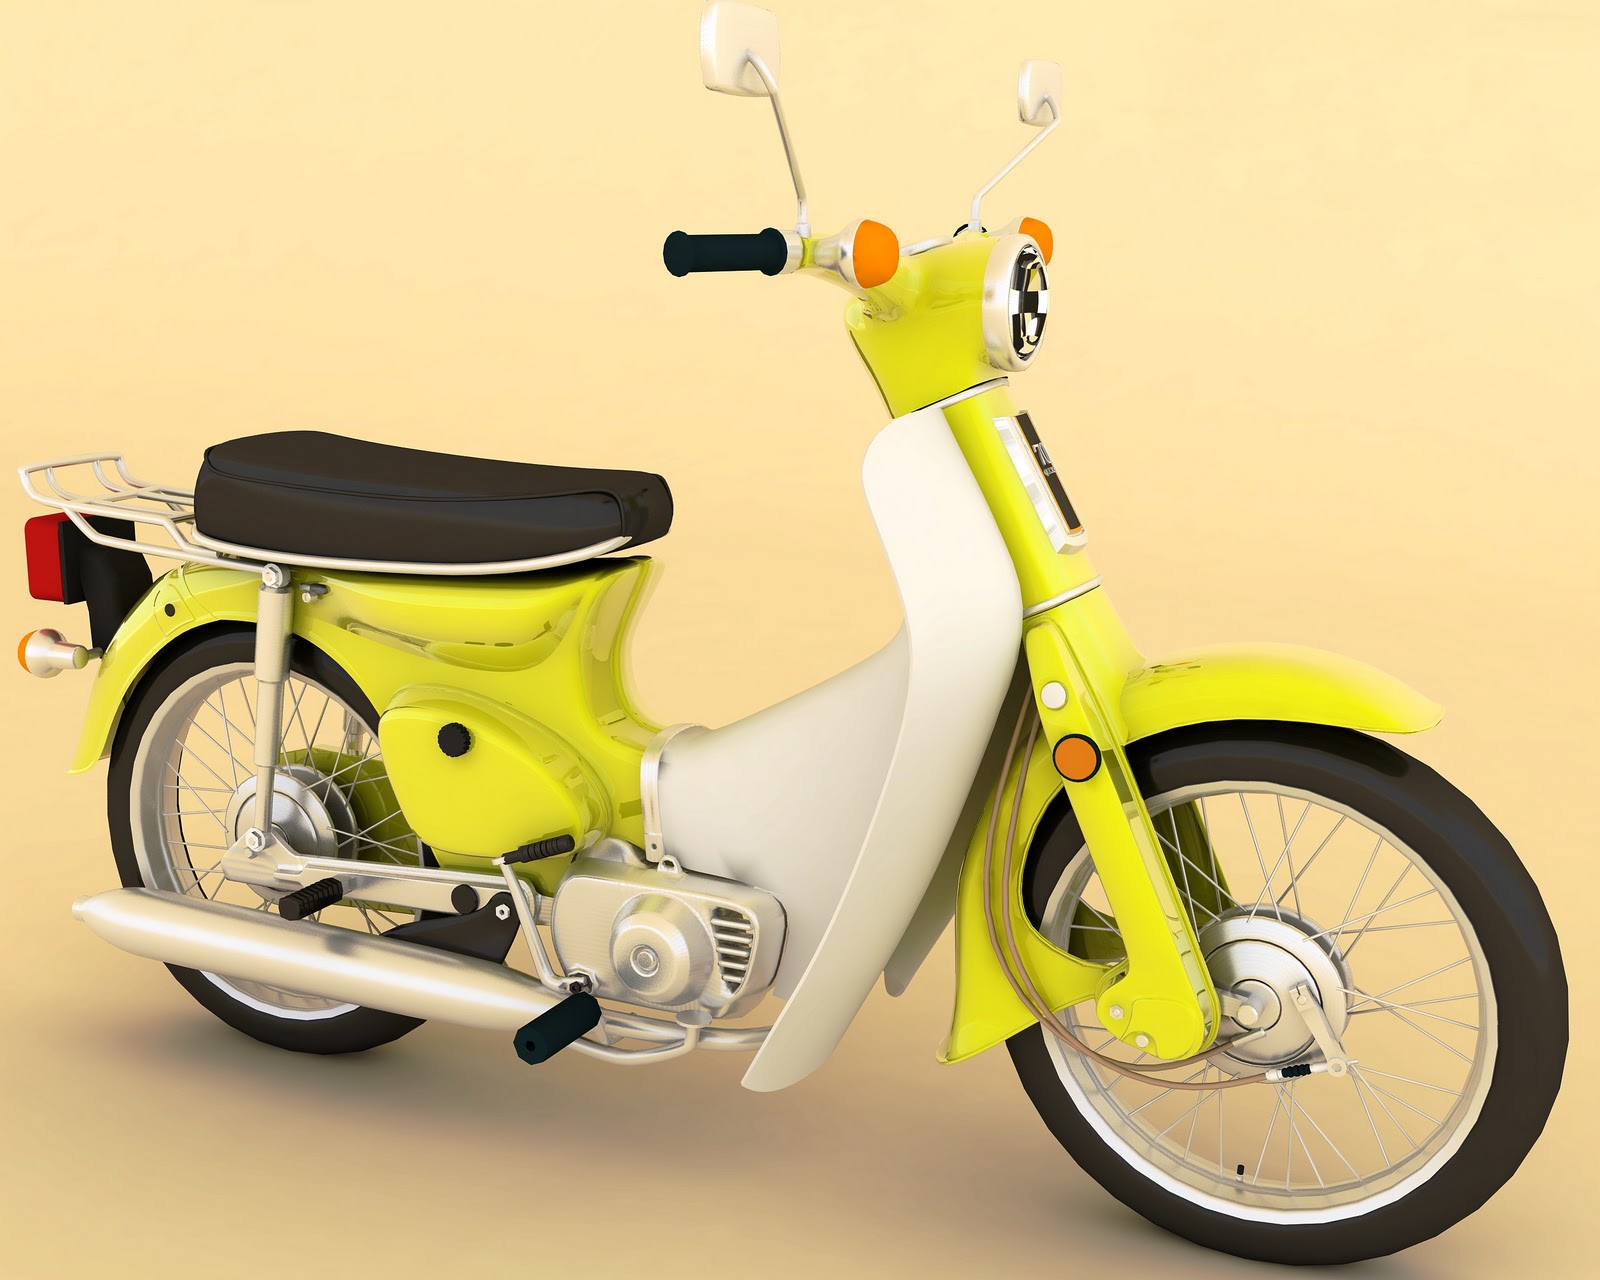  Gambar  Modifikasi Motor  Gambar  Modifikasi Motor  Honda  70  